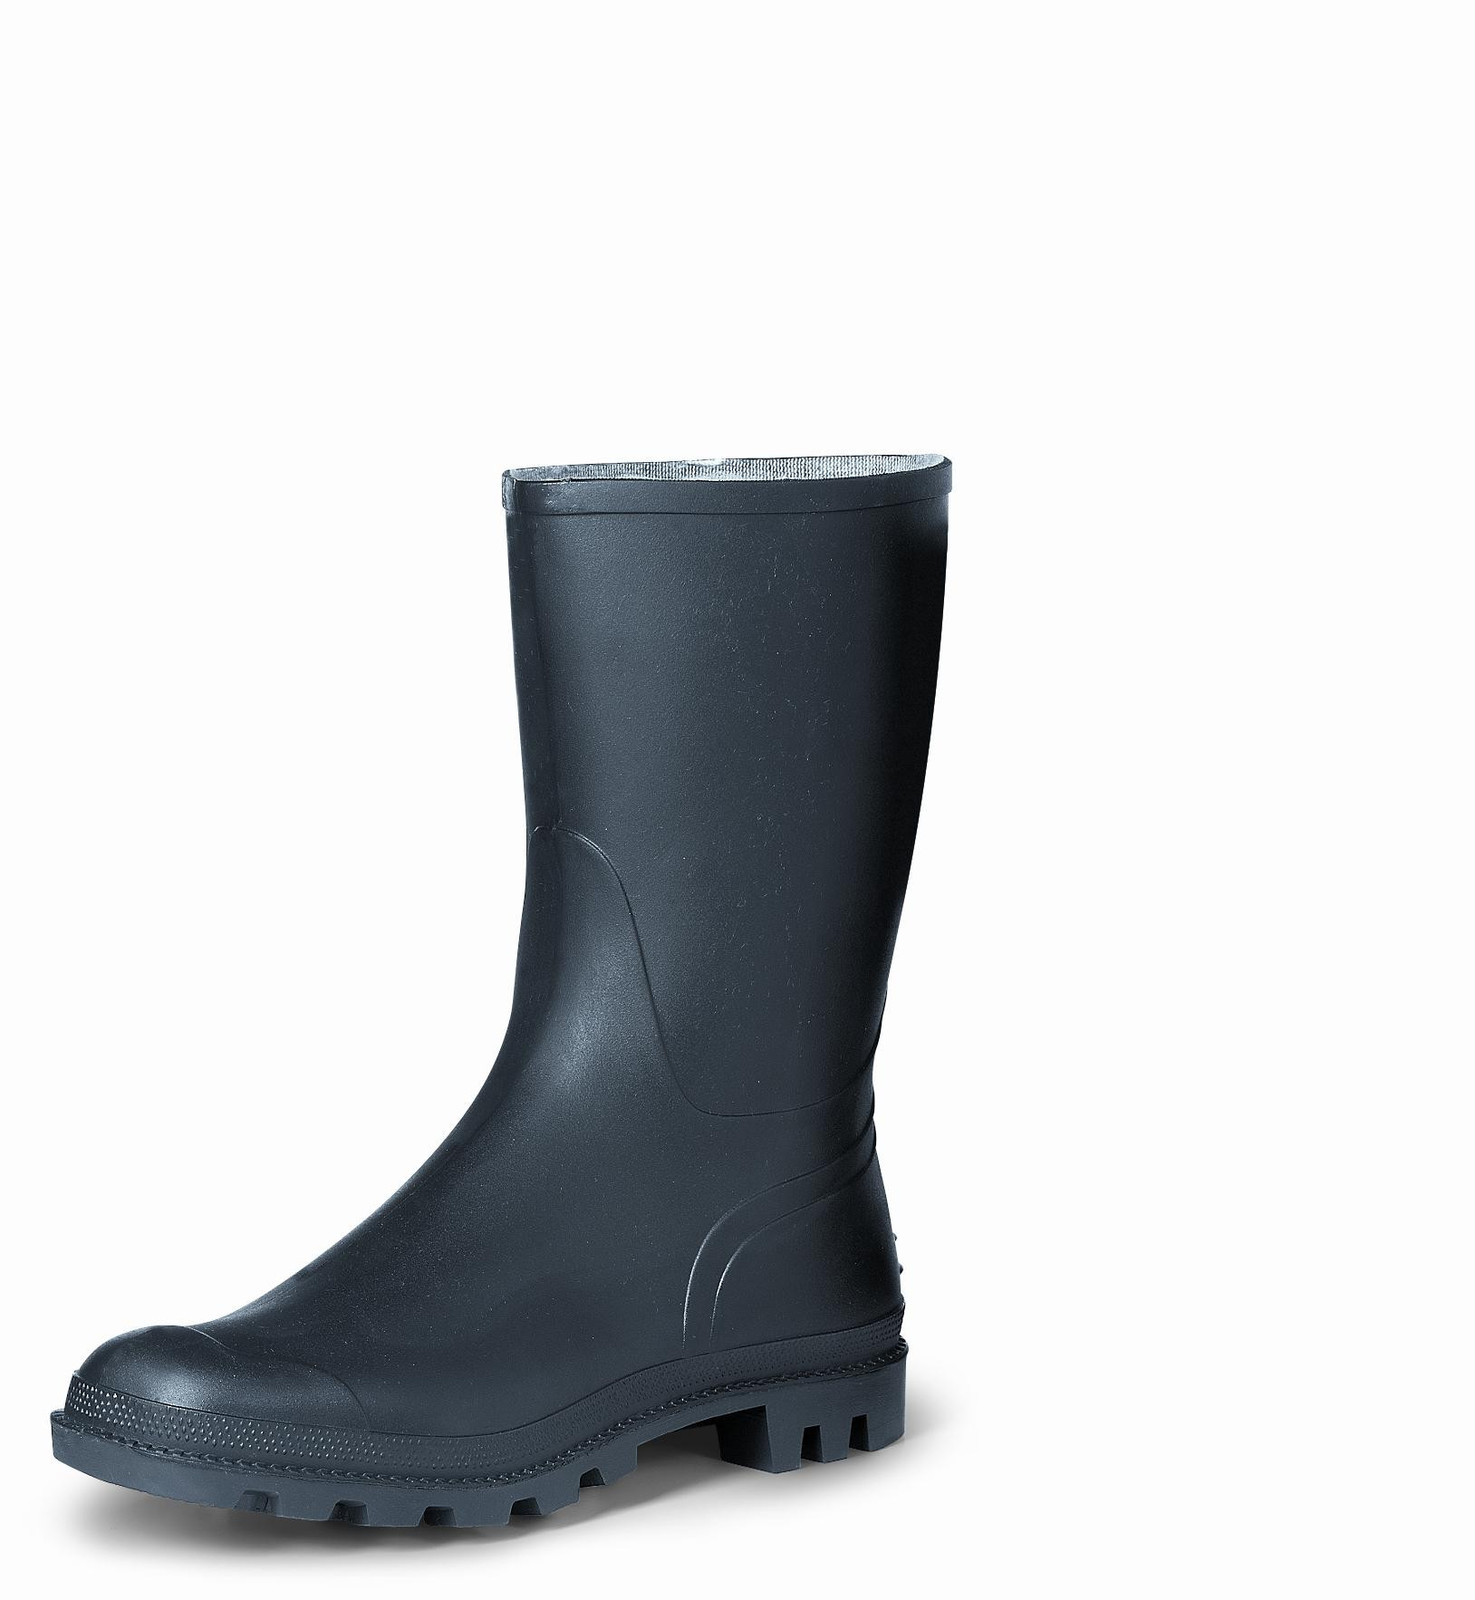 Gumáky Boots Troncheto PVC nízke - veľkosť: 42, farba: čierna